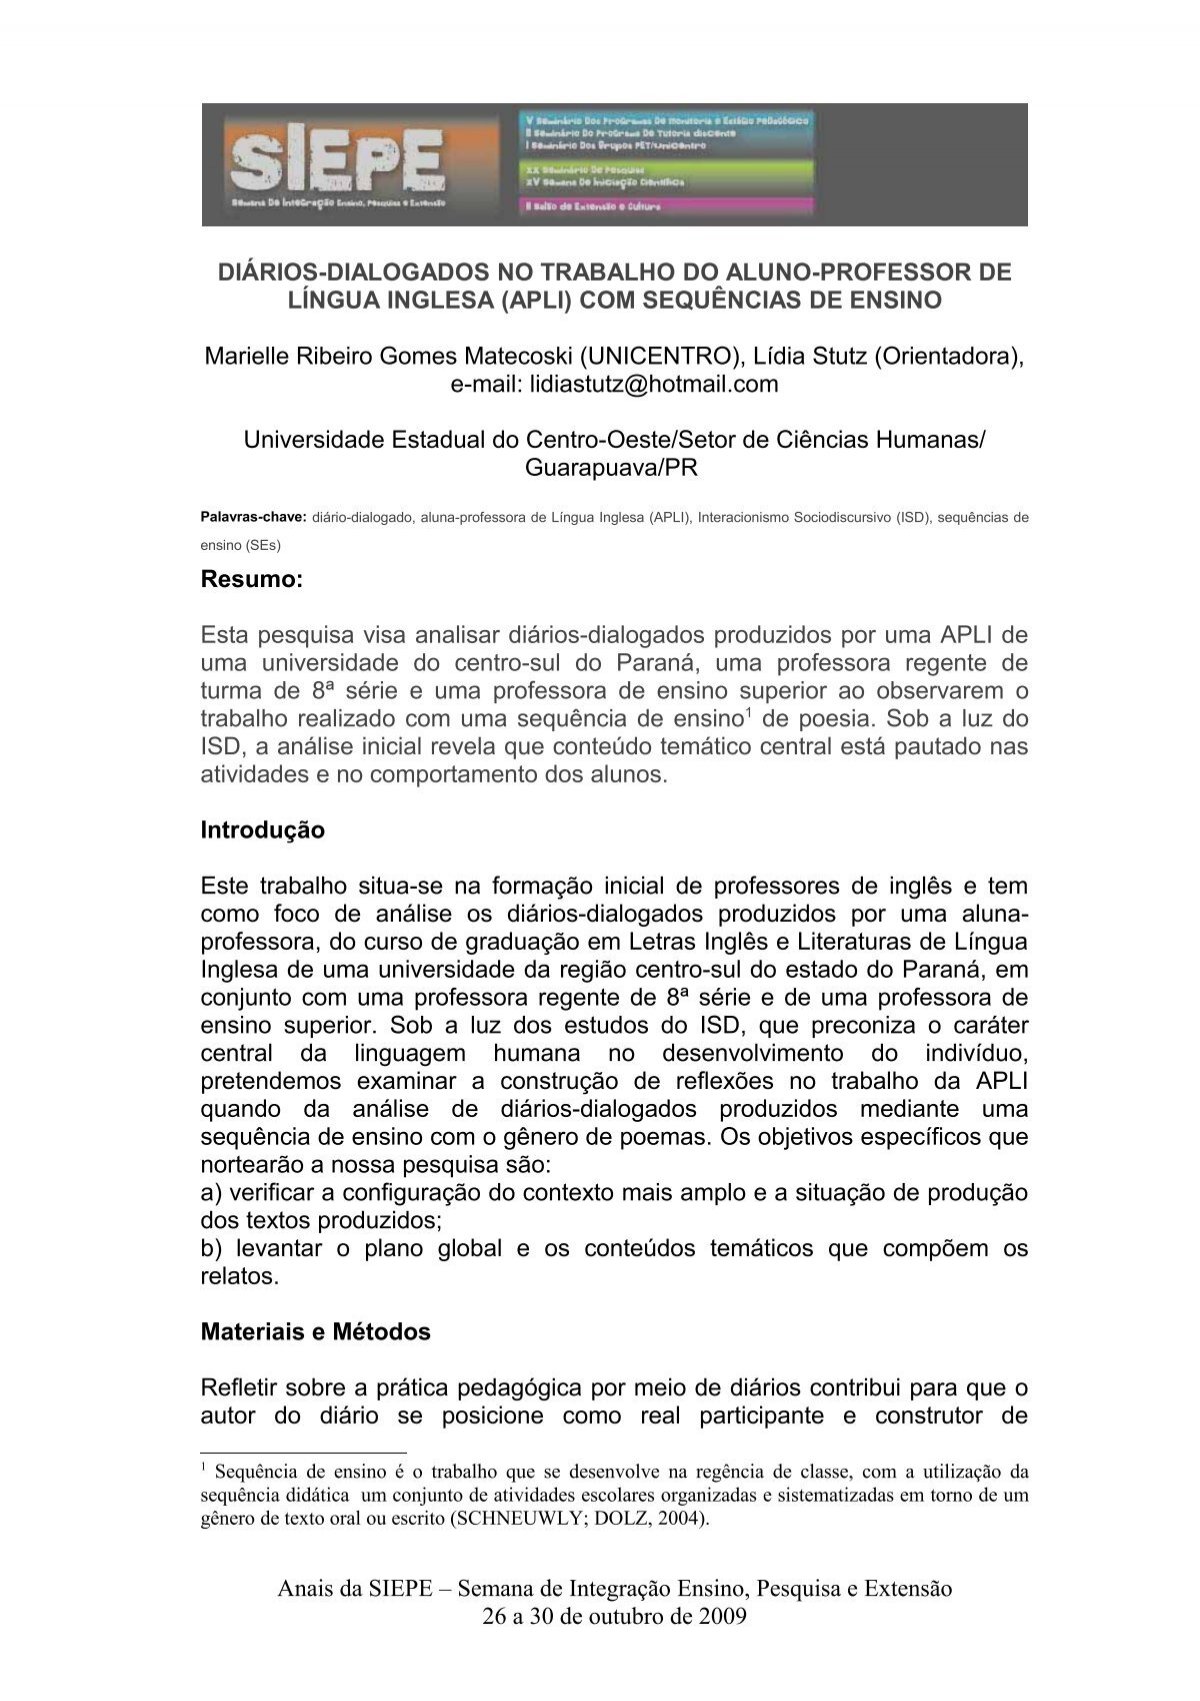 Contrato para Aulas de Língua Inglesa Particulares, PDF